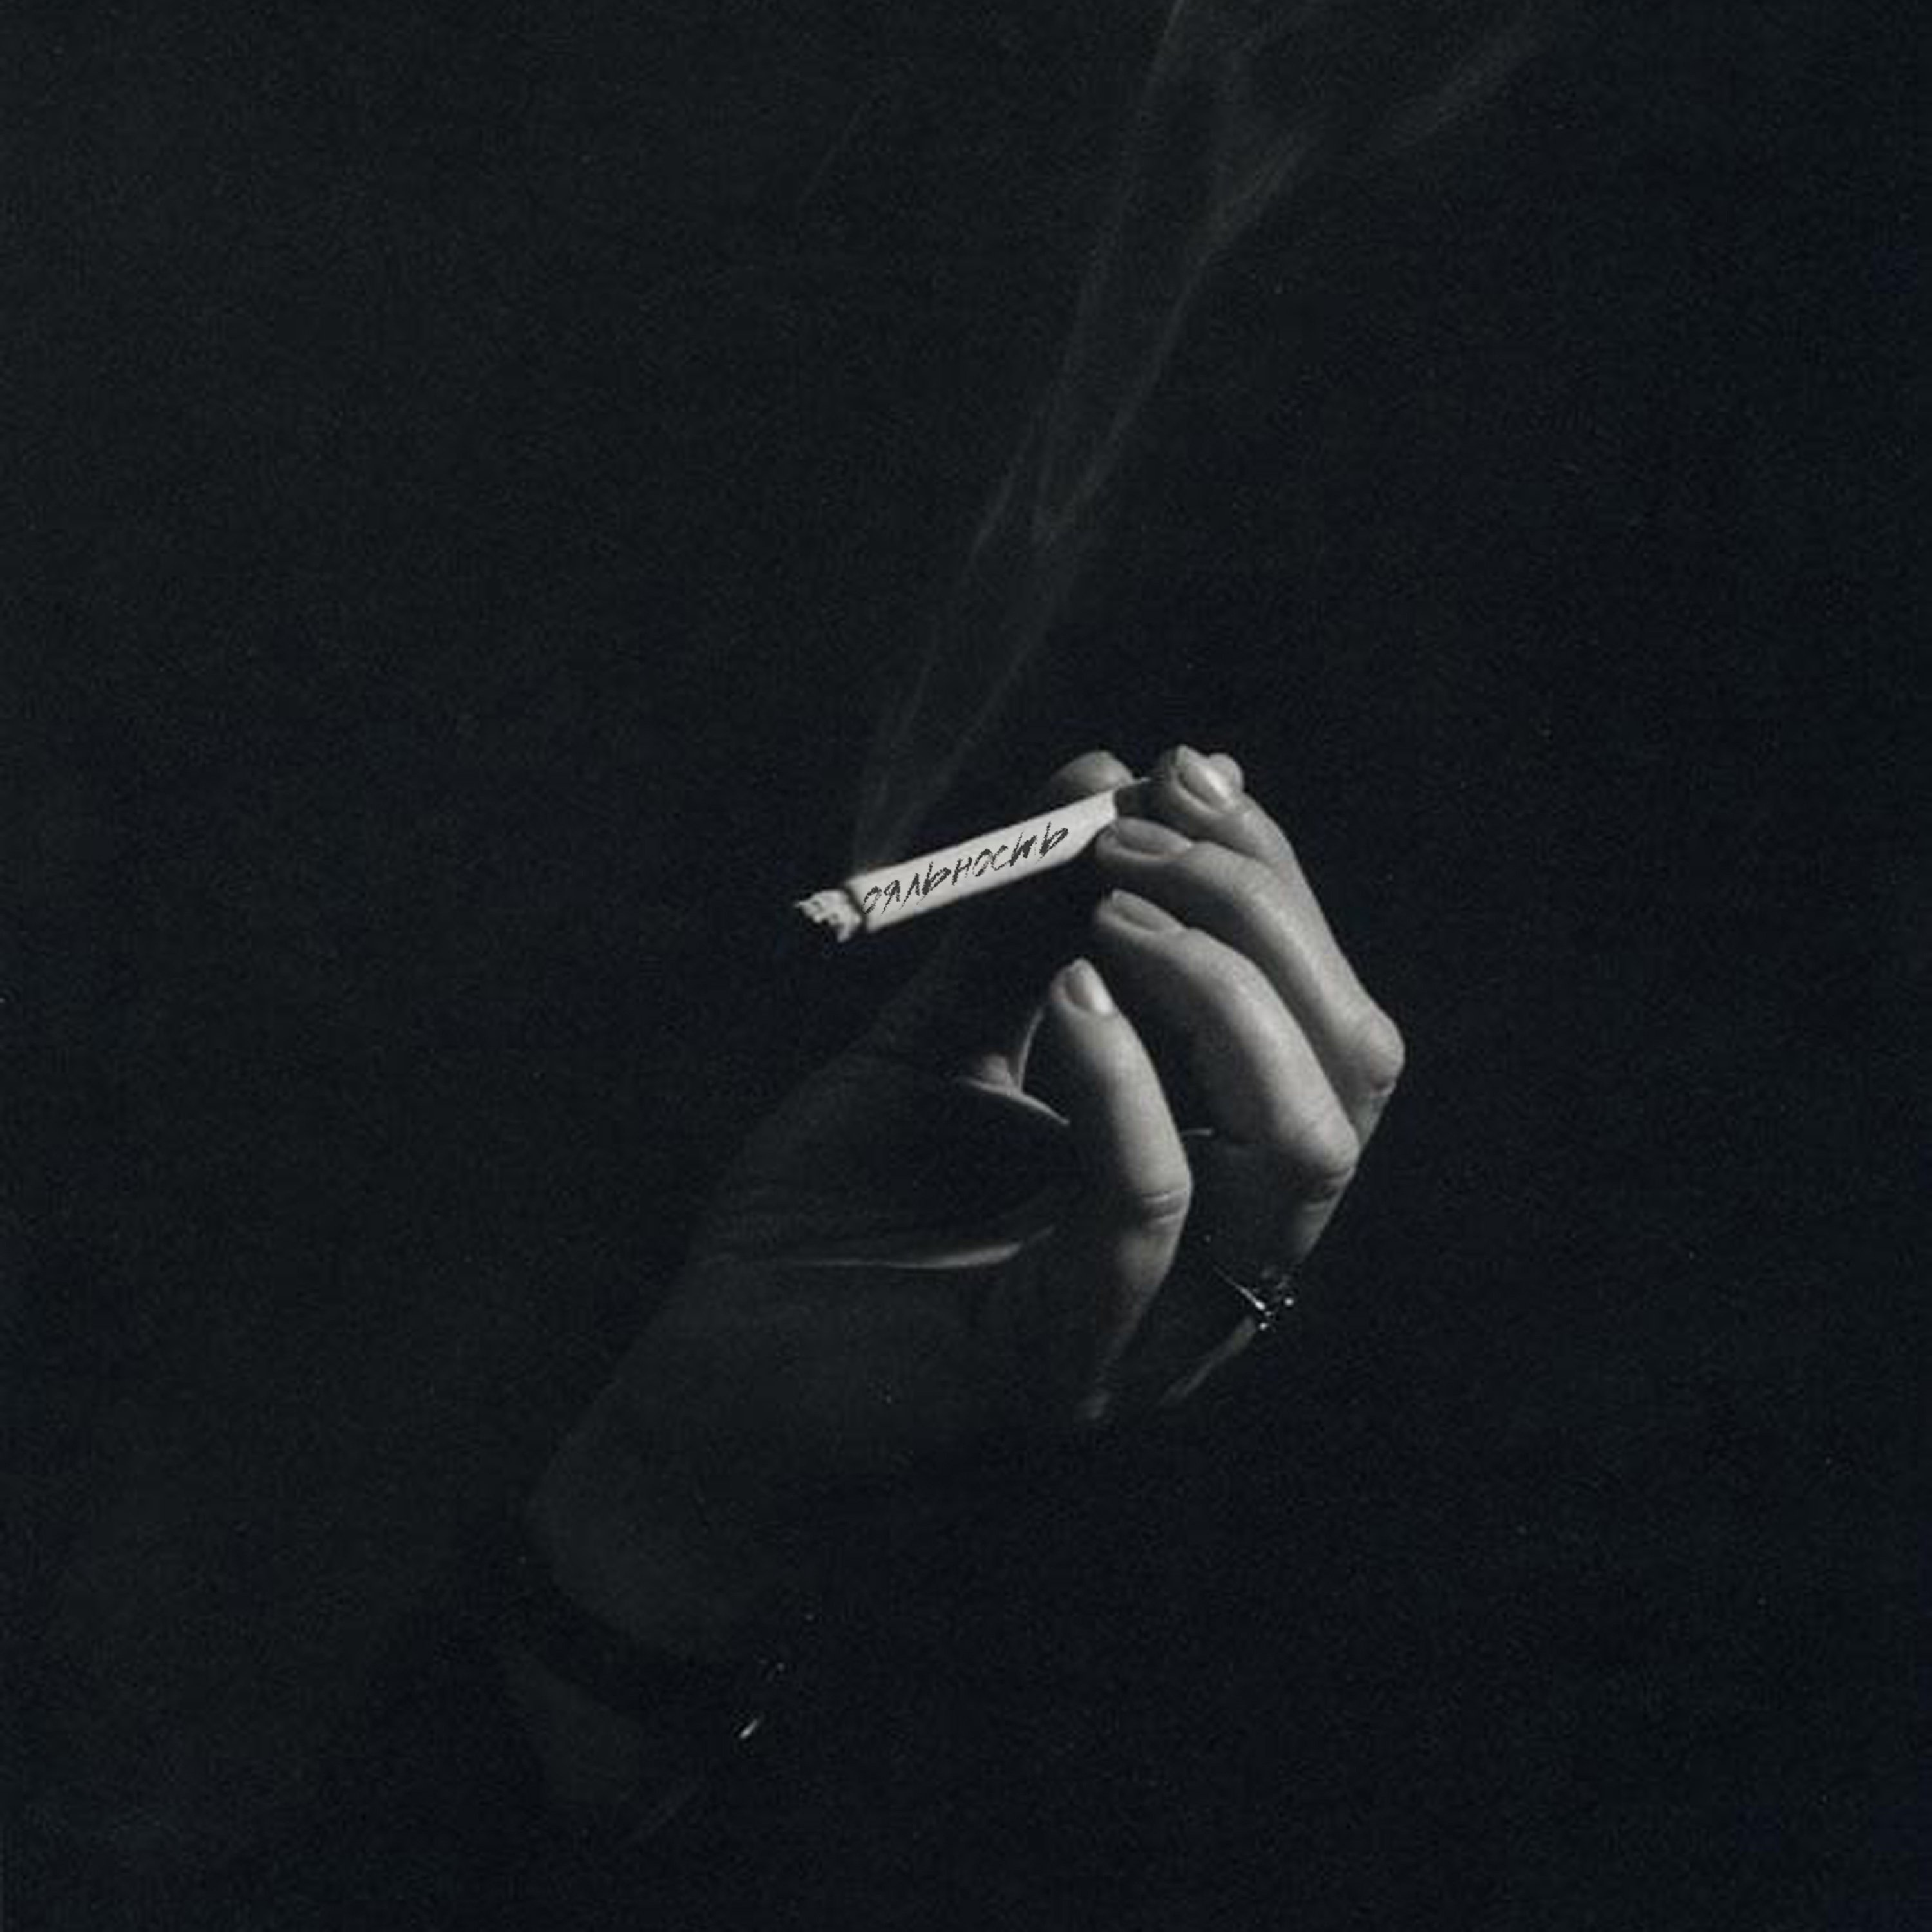 Песня ночь сигарета. Сигареты Эстетика. Мужская рука с сигаретой. Сигаретатв руке еа черном фоне. Курение Эстетика.